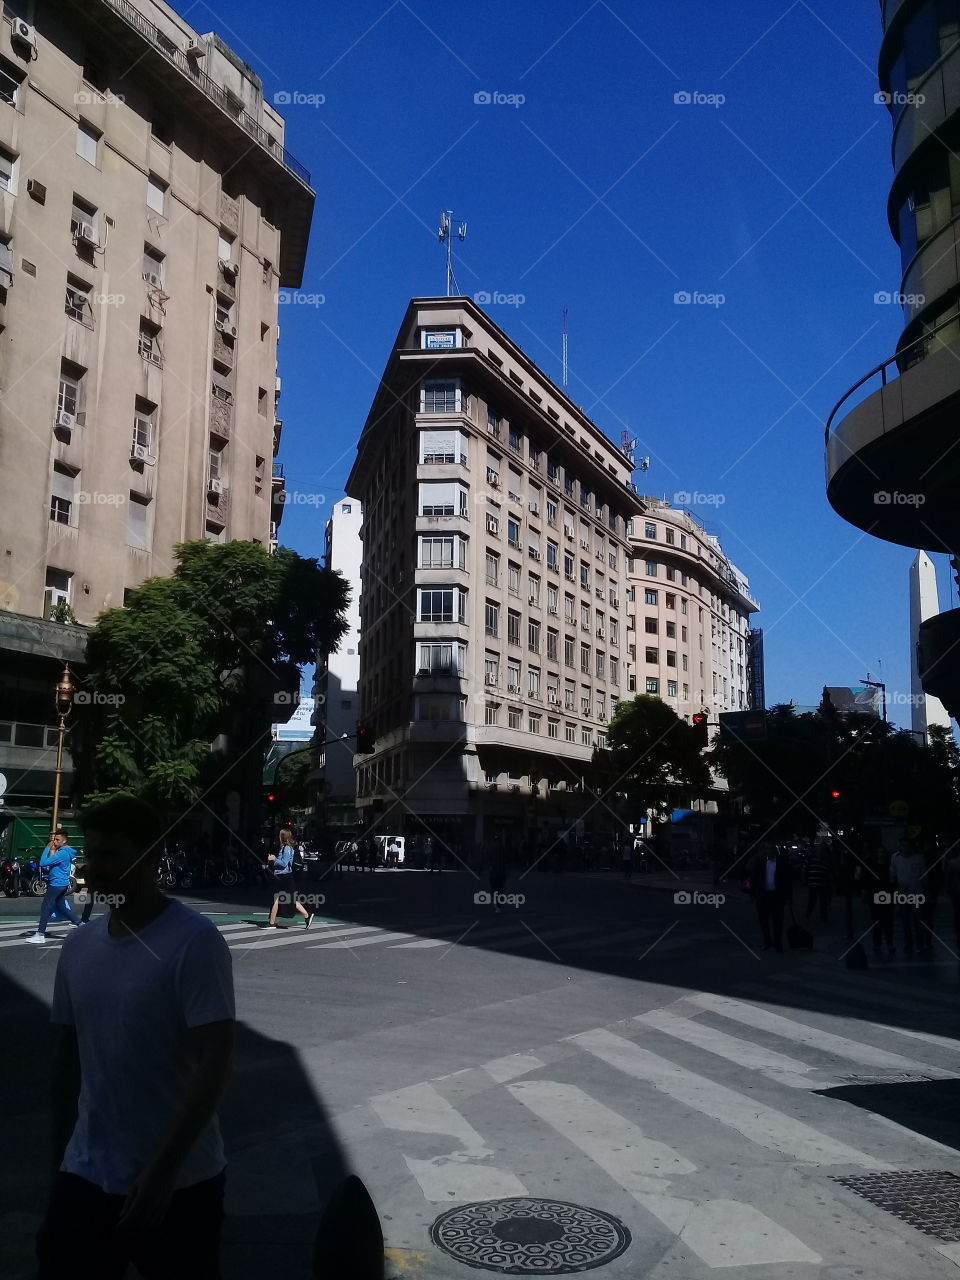 imagen de edificios típicos del micro centro porteño.  Ciudad Autónoma de Buenos Aires.